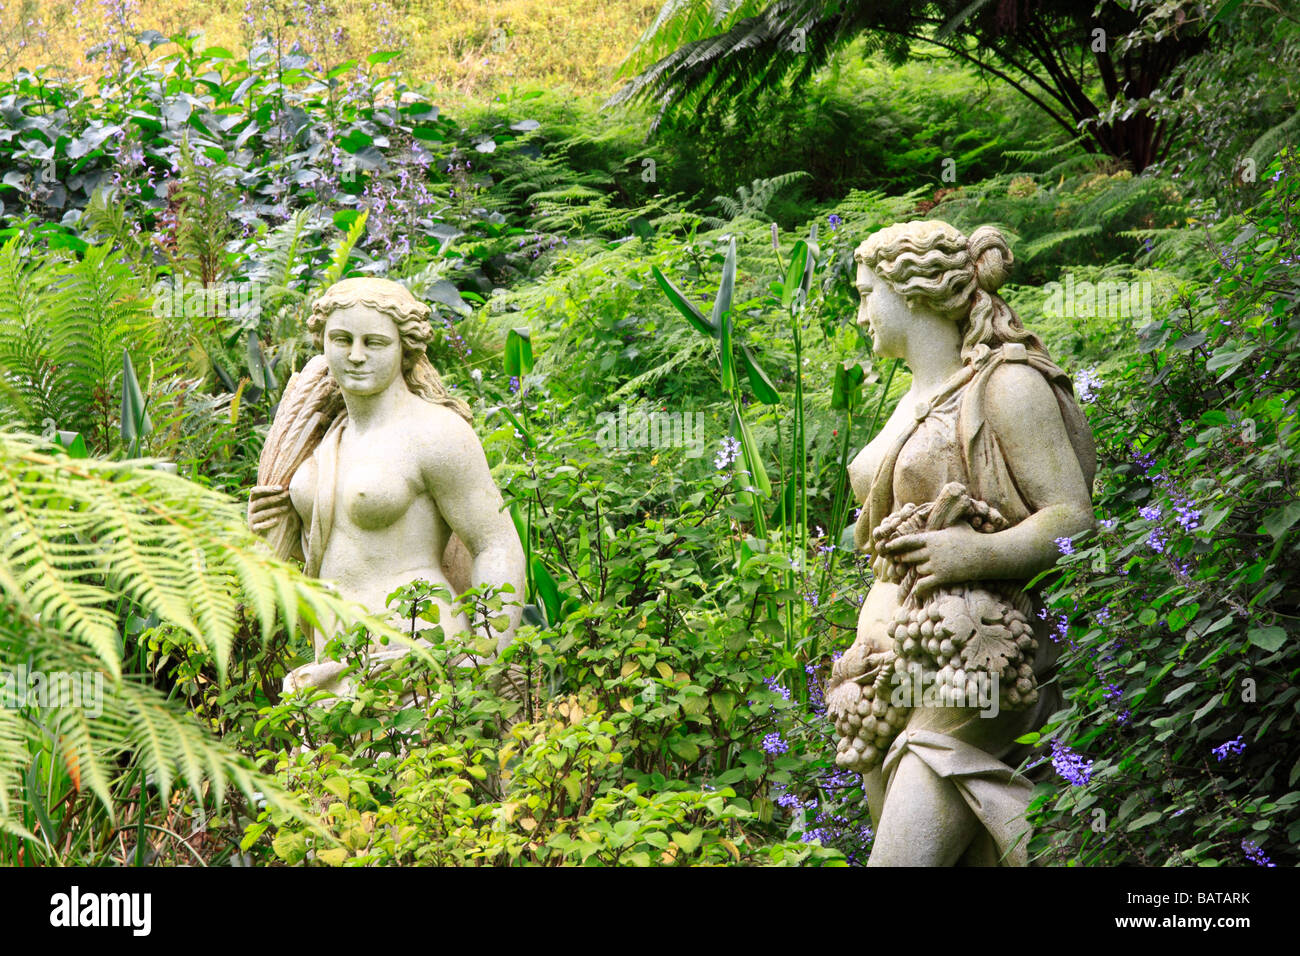 Semi nude statue figures in flower garden Stock Photo